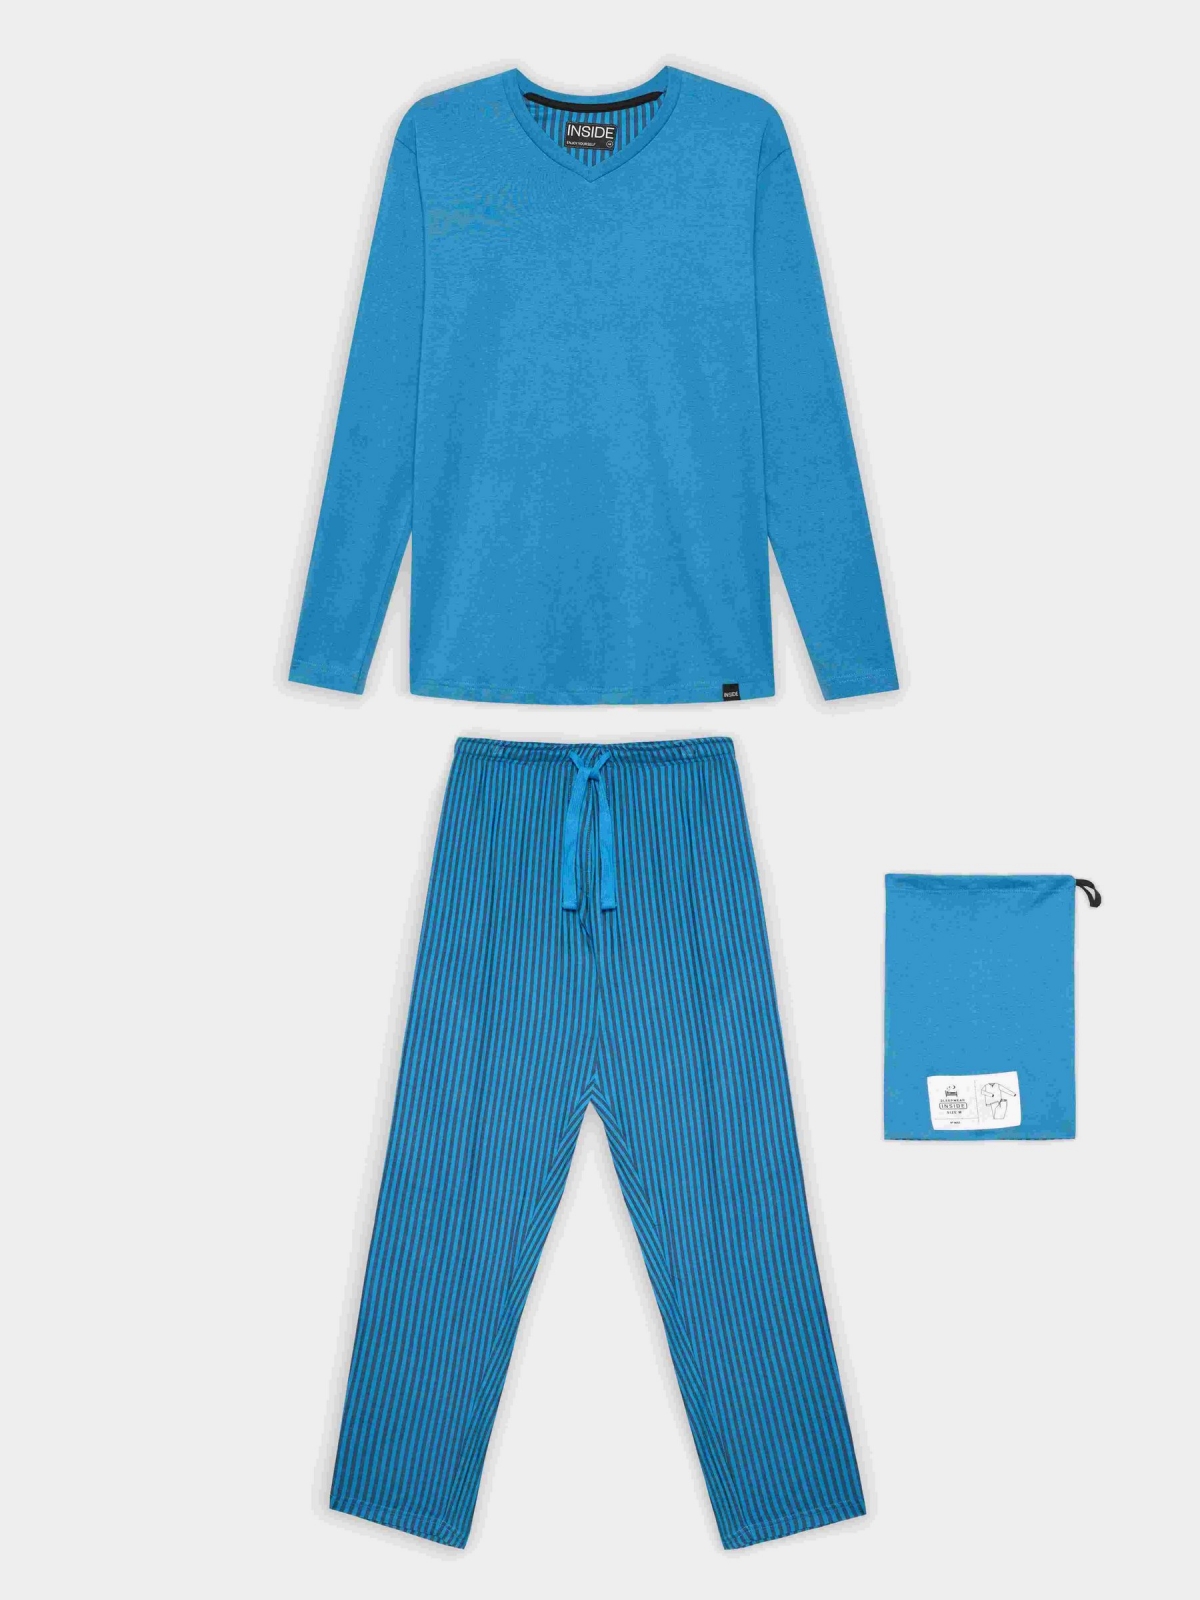 Blue pajamas striped pants blue